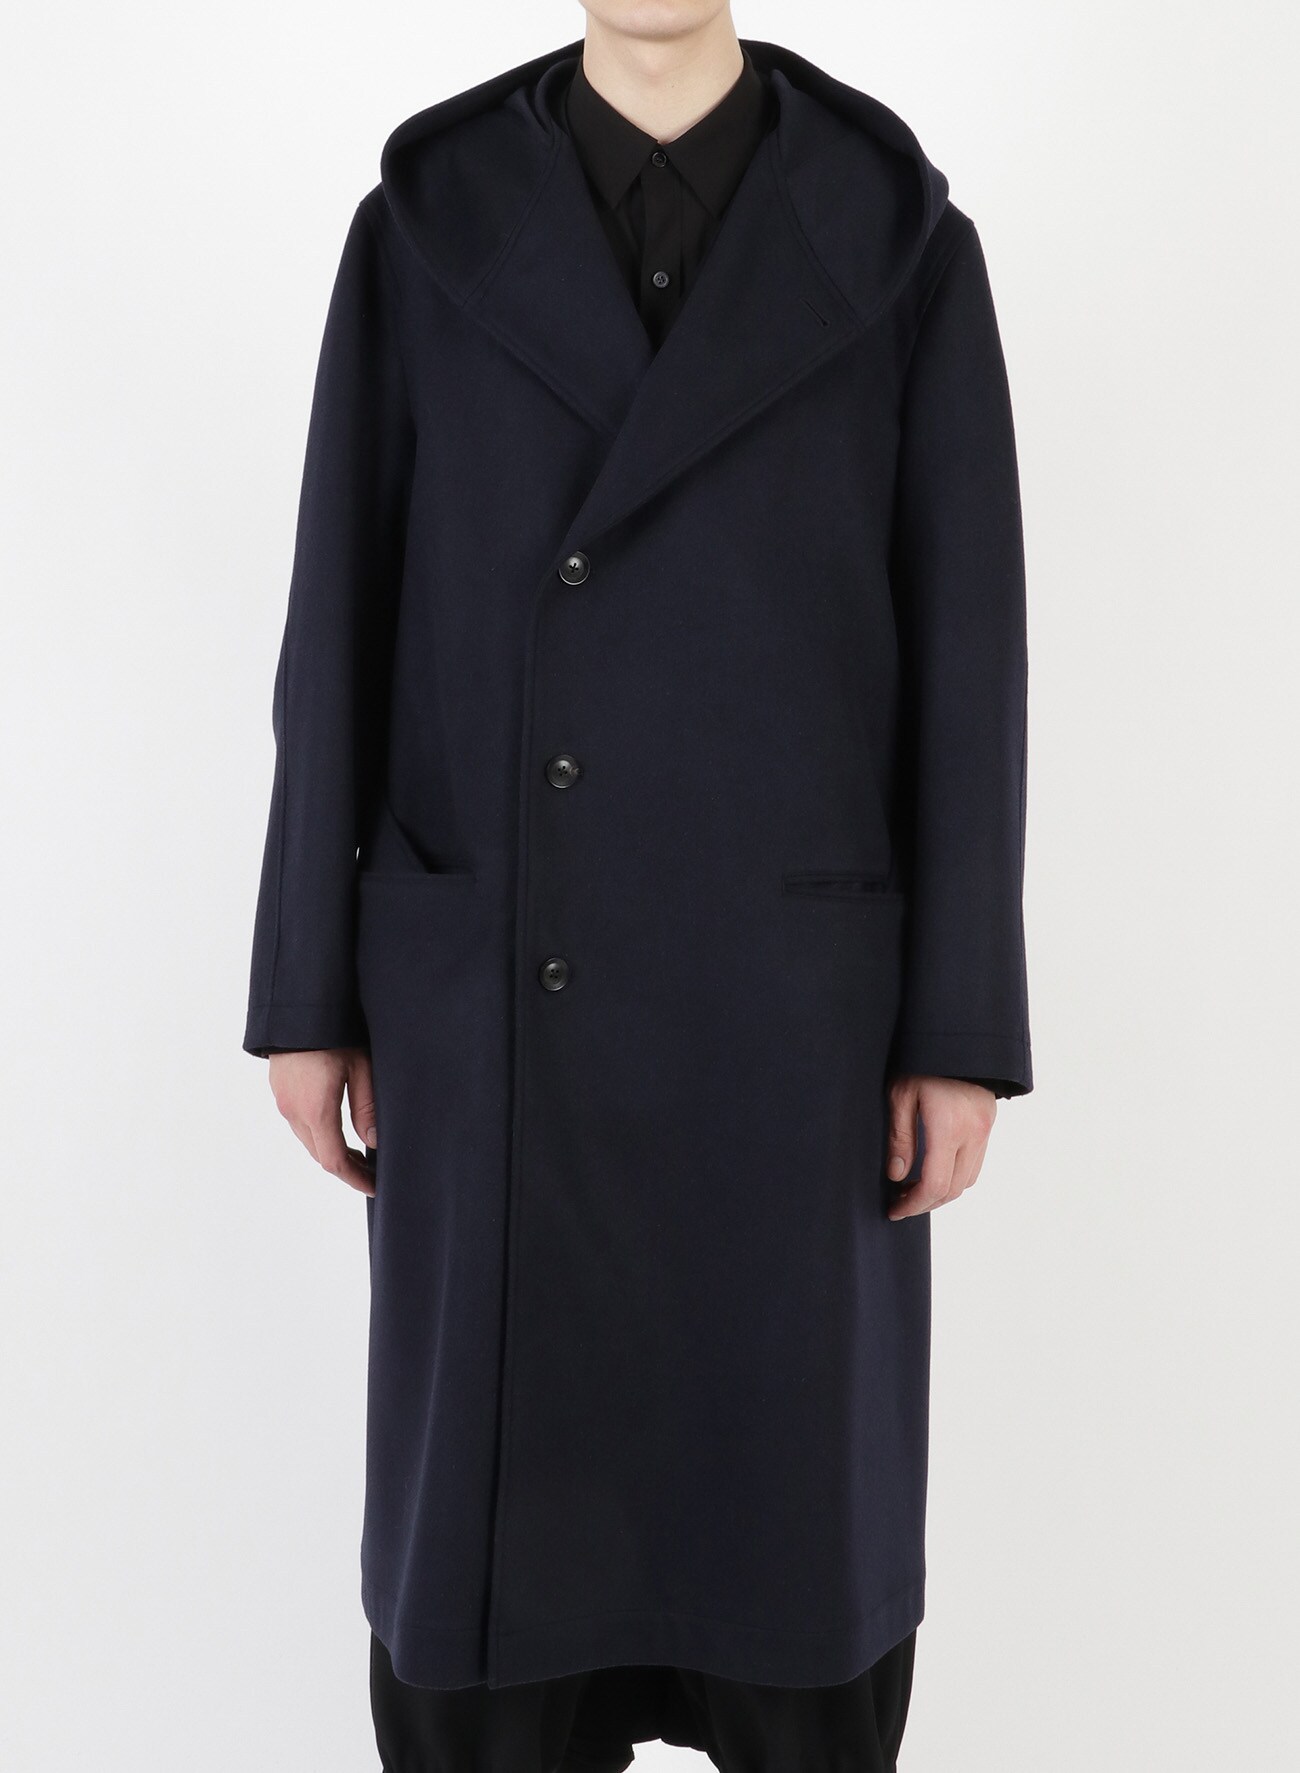 REGULATION Yohji Yamamoto Hooded Coat